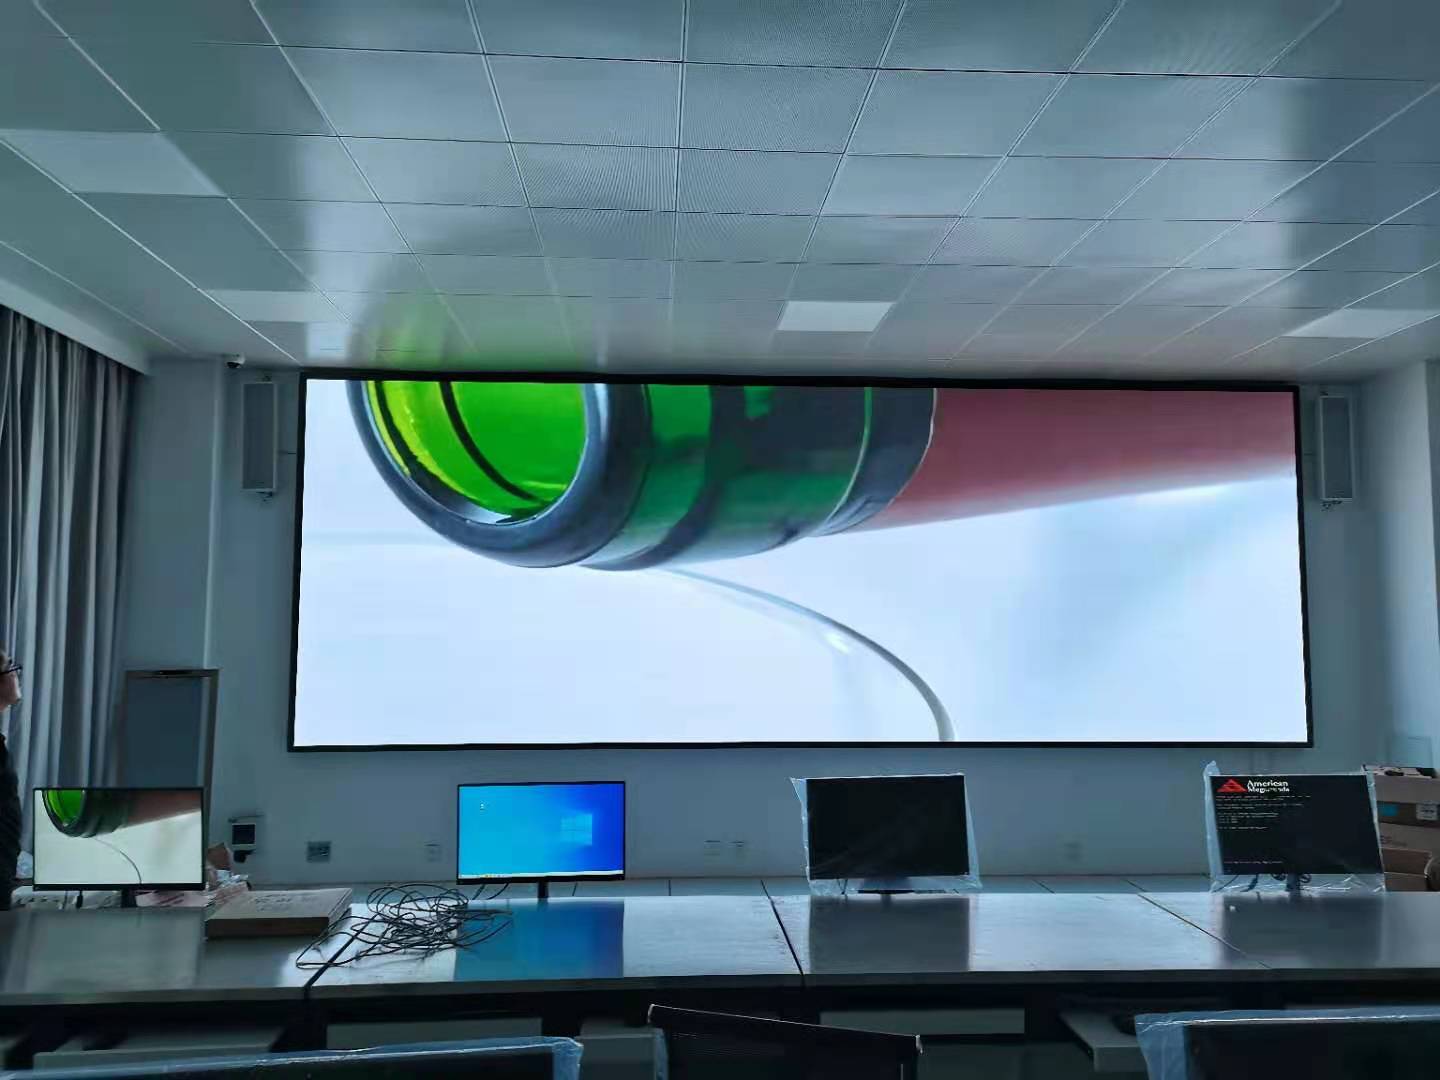 石橫特鋼集團培訓學院教室P2.0高清全彩LED顯示屏案例